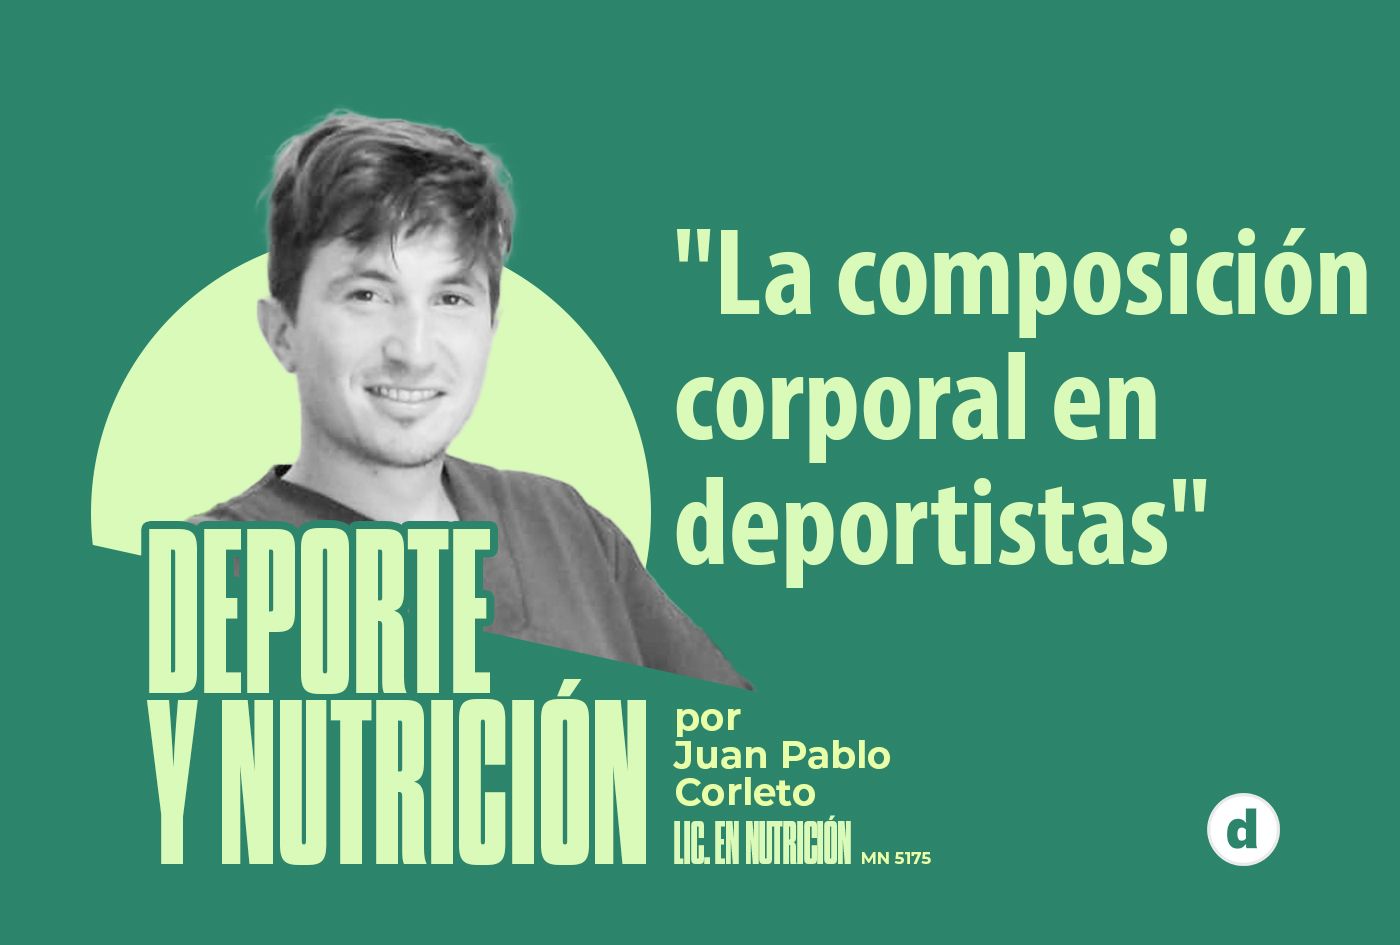 La columna del nutricionista Juan Pablo Corleto: “La composición corporal en deportistas”